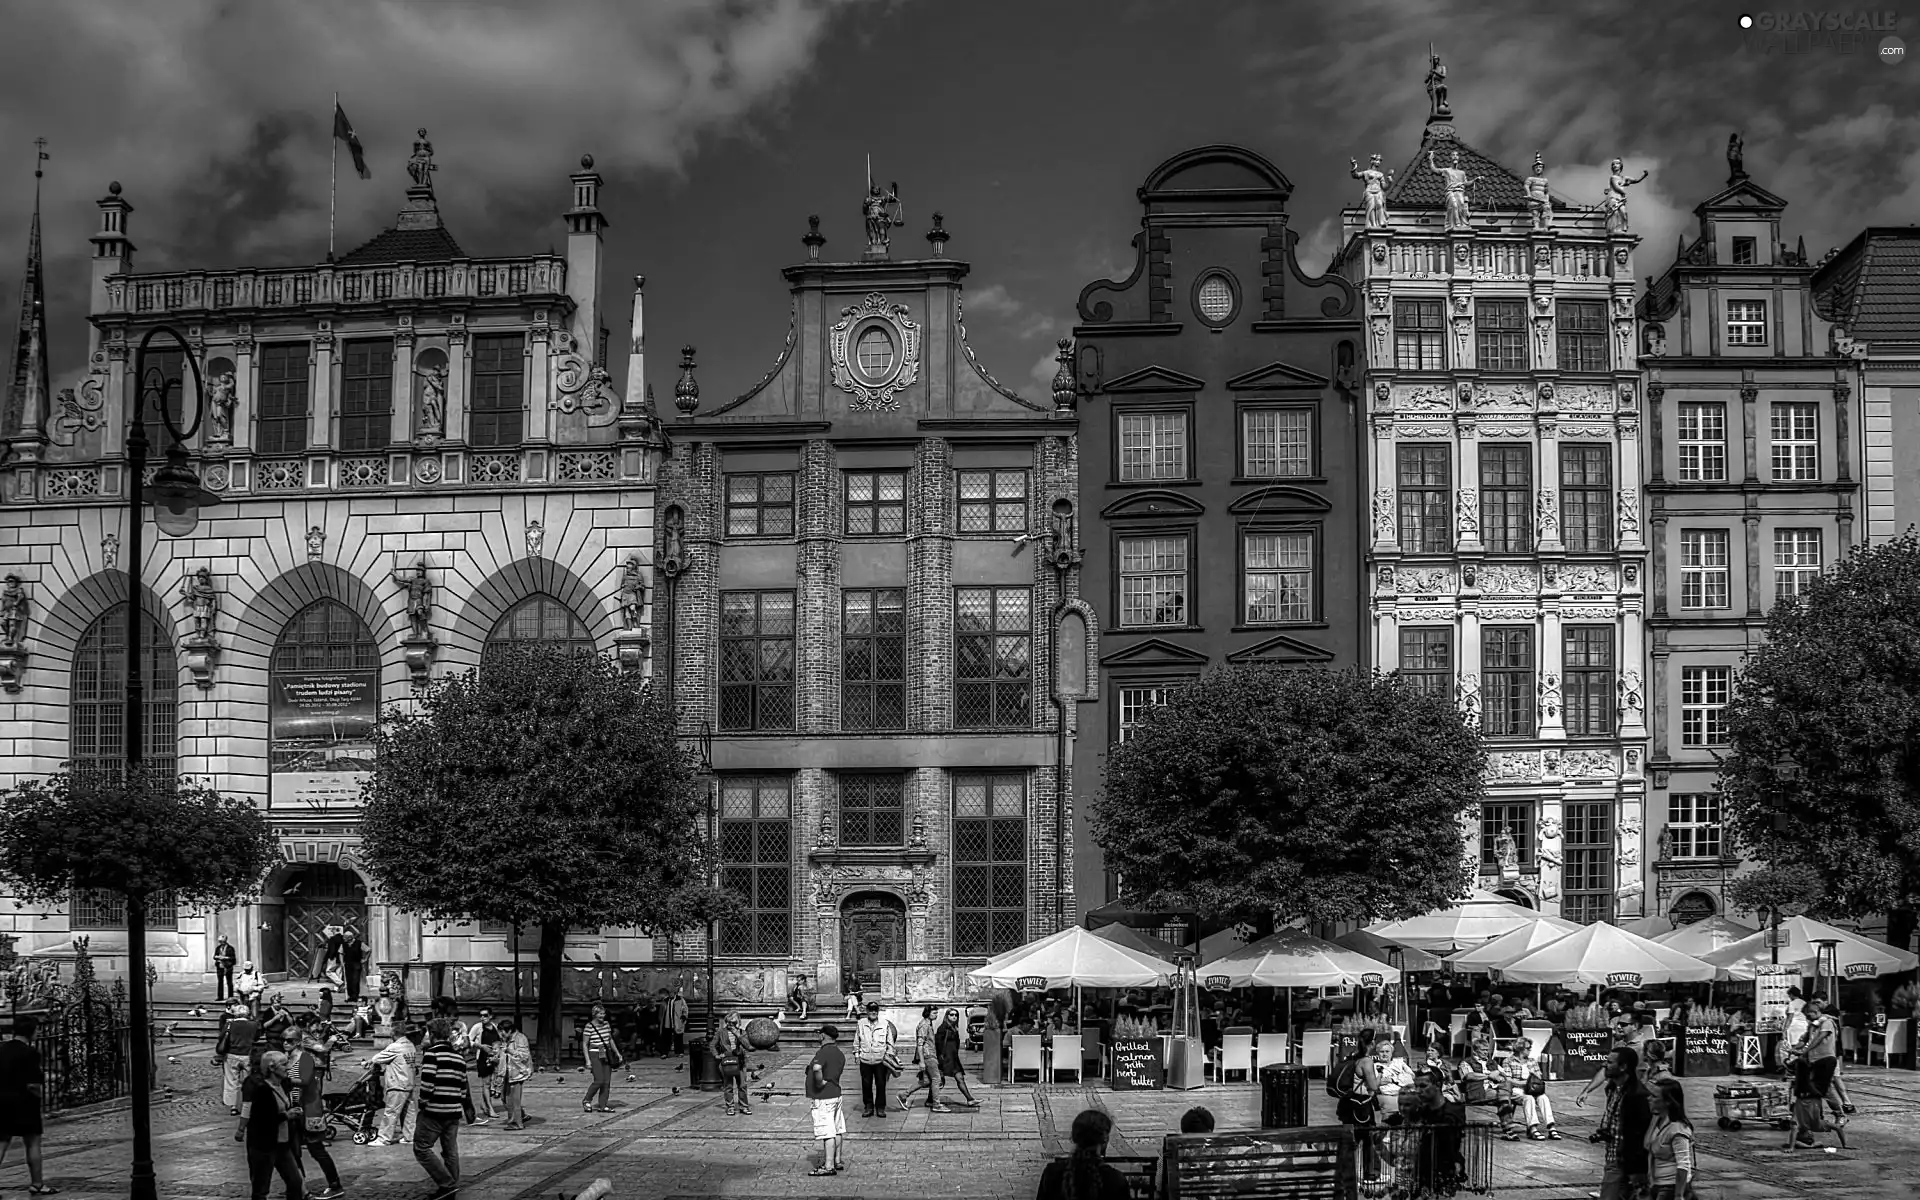 Town, Gdańsk, Poland, apartment house